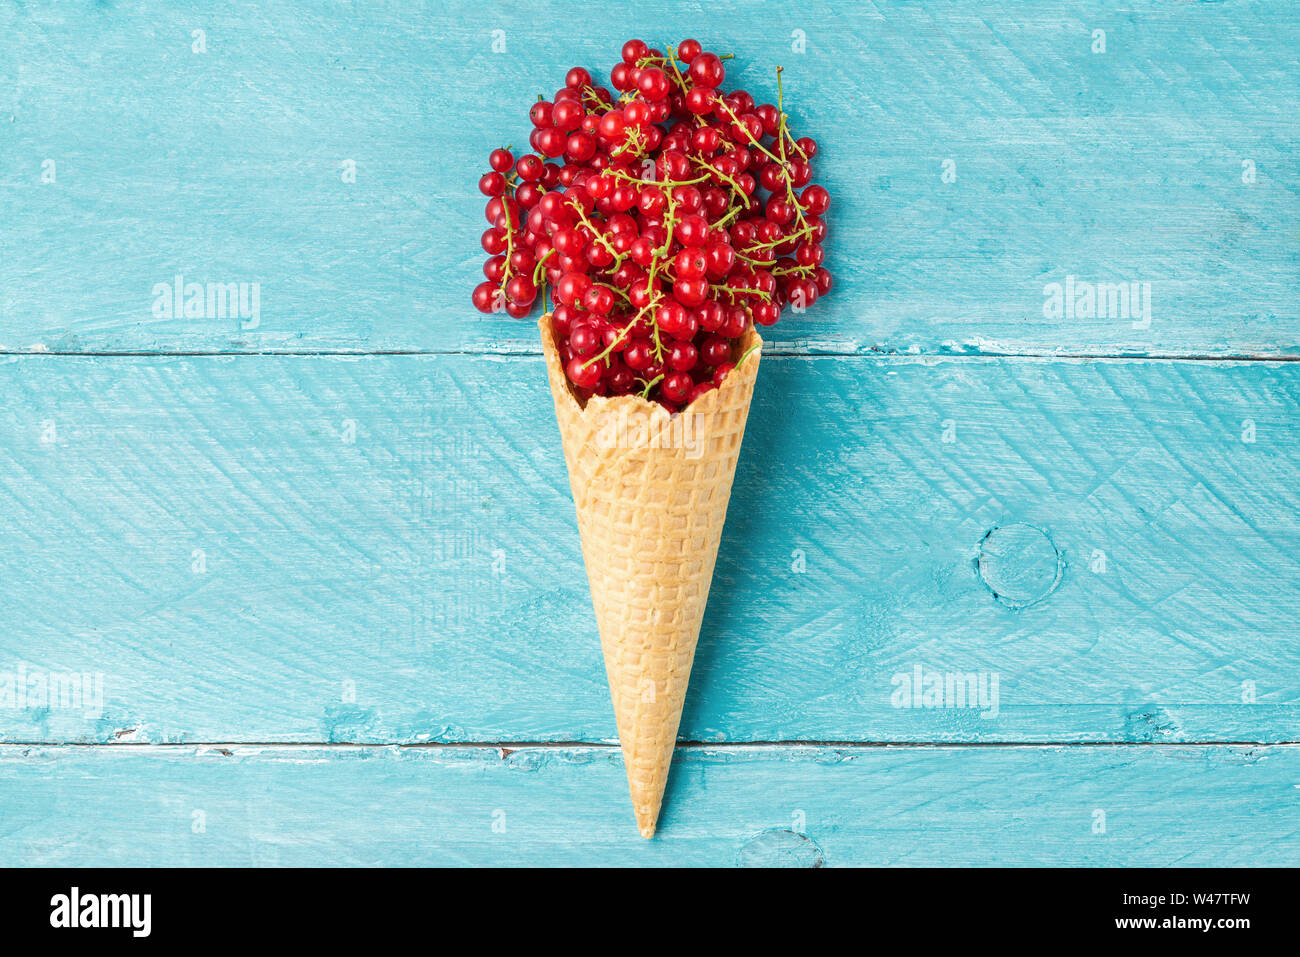 Rote Johannisbeere Beeren in der Waffel Eiswaffel auf Blau Holz- Hintergrund. Kreative Sommer essen Konzept. Flach. top View Stockfoto